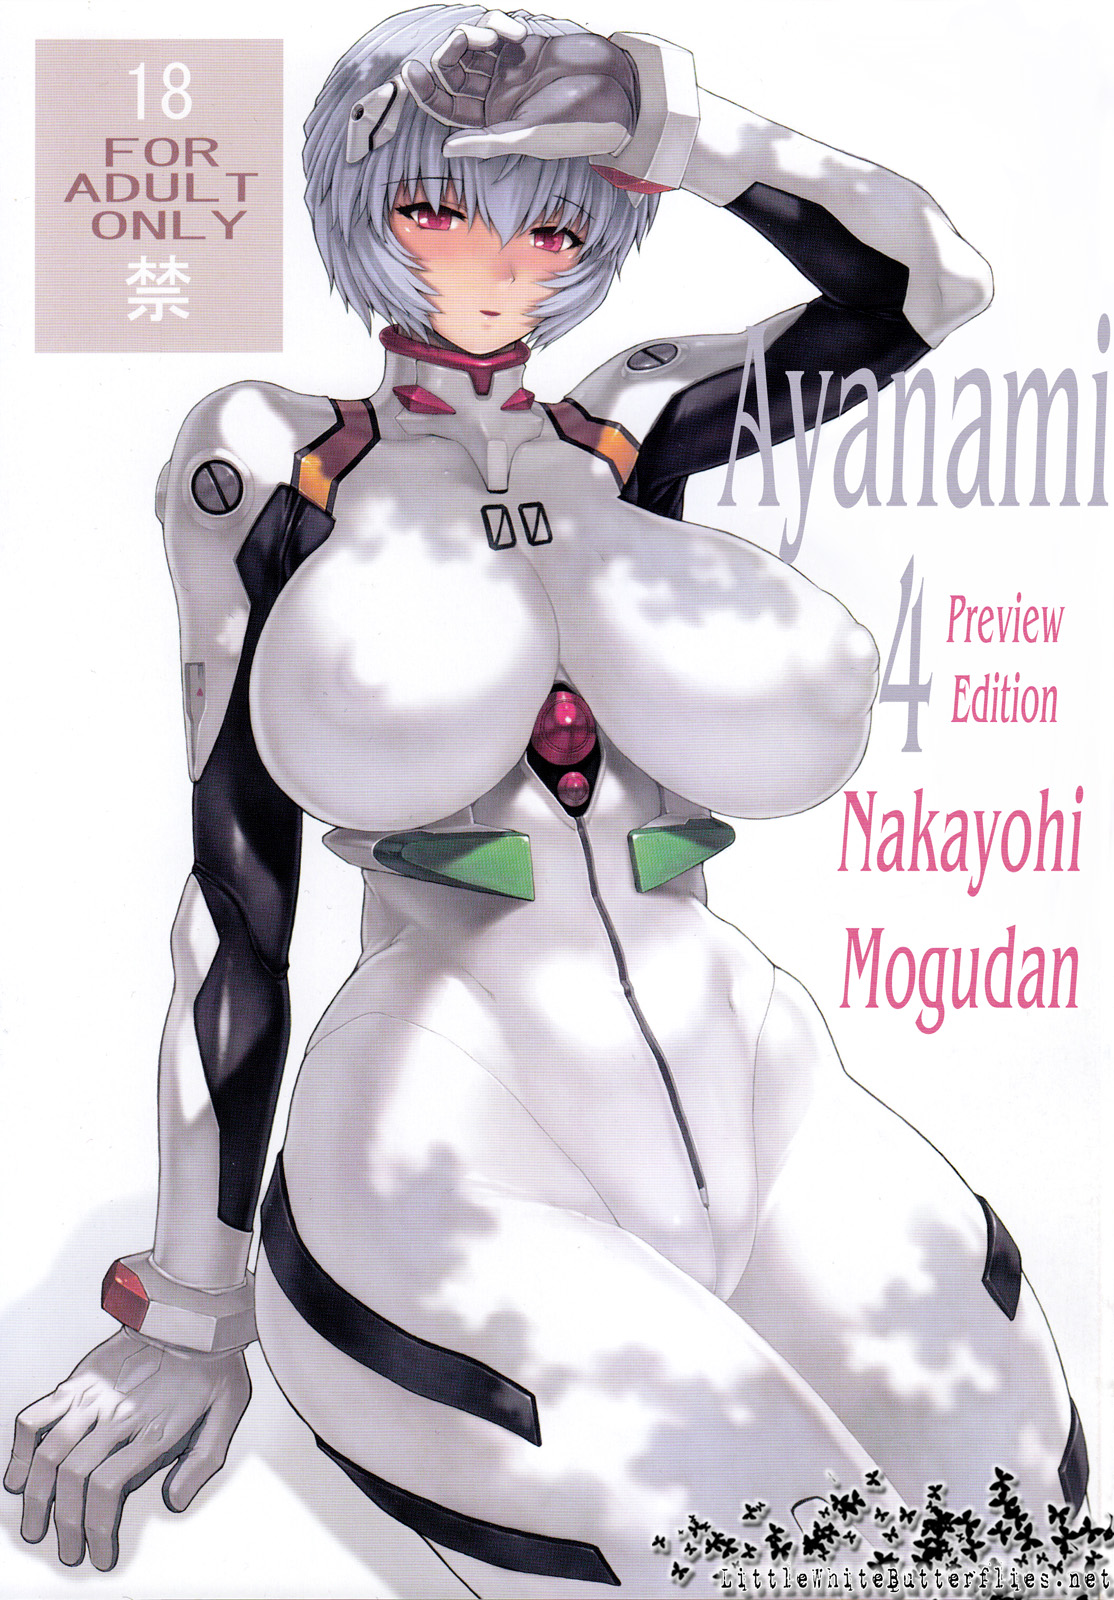 (C79) [Nakayohi Mogudan (Mogudan)] Ayanami 4 Preview Edition (Neon Genesis Evangelion) (English) 